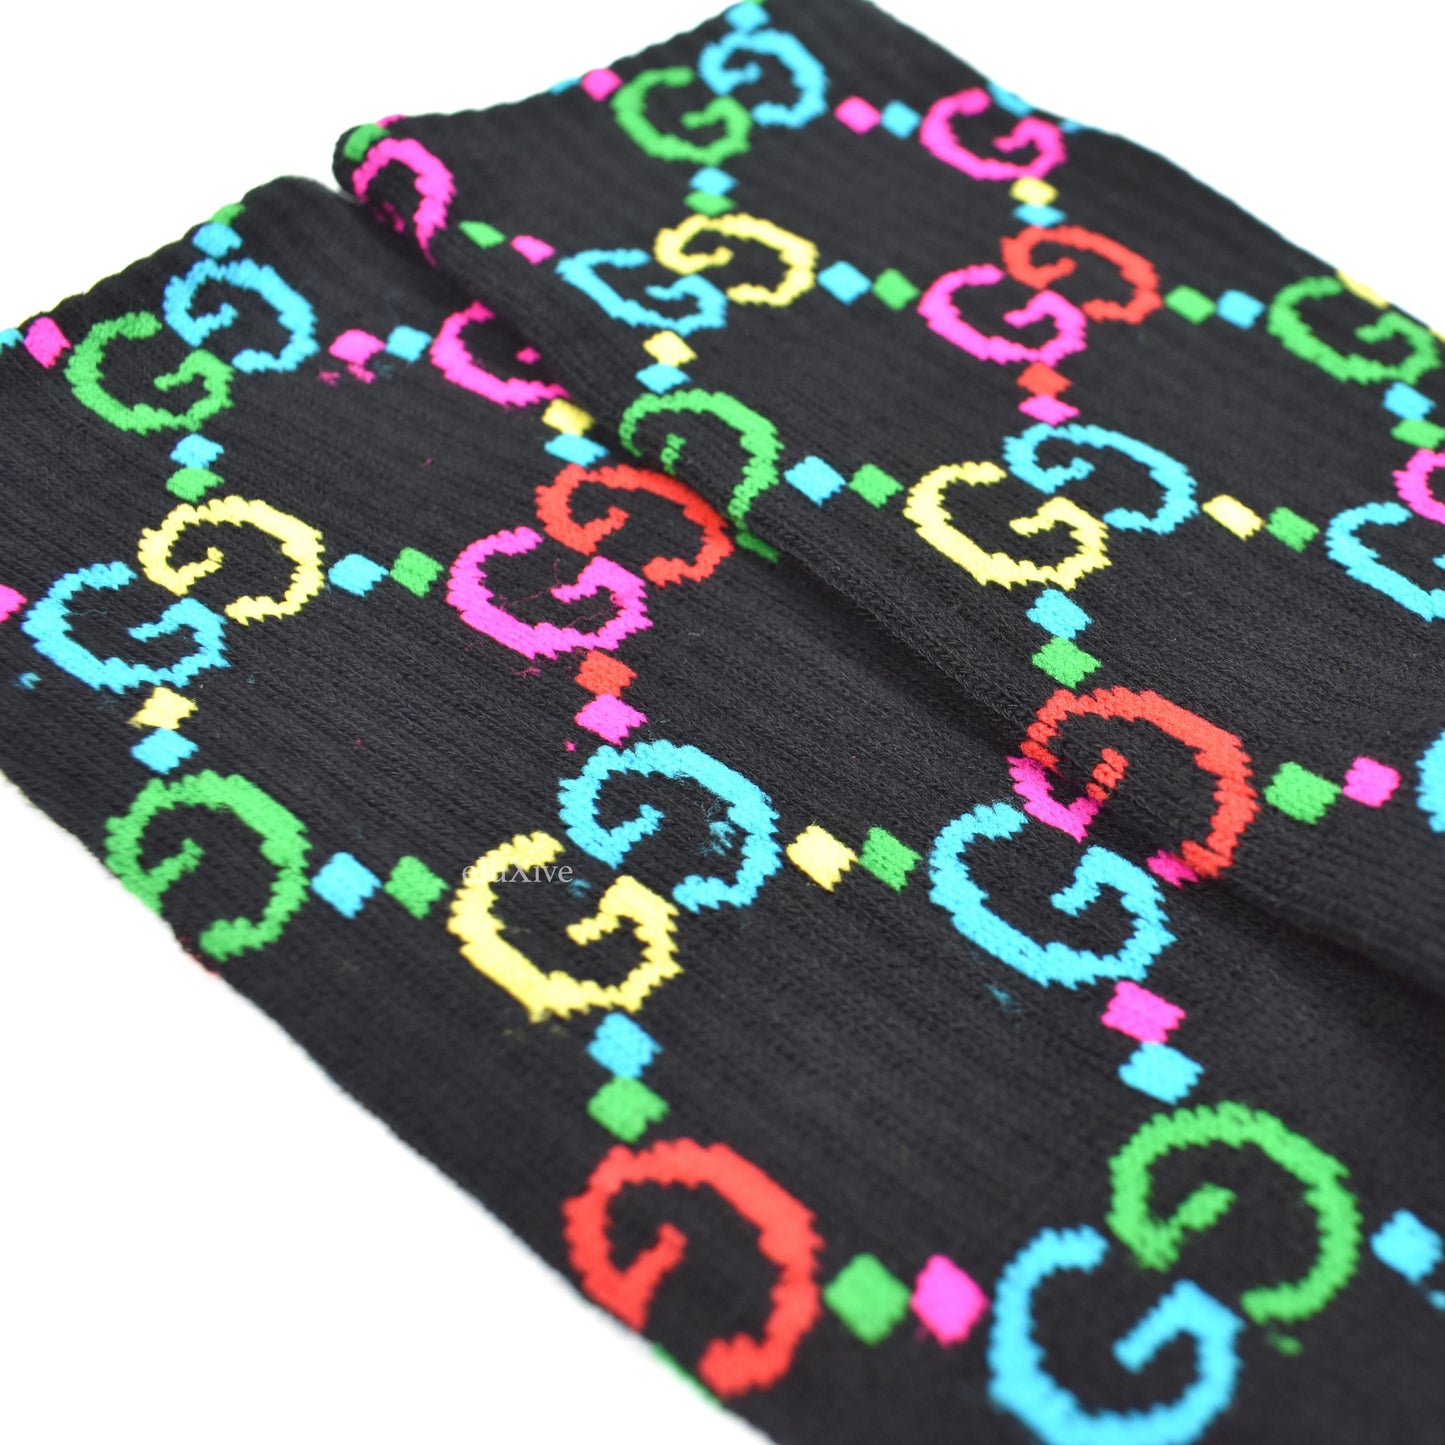 Imran Potato - Black/Rainbow 'Gucci' Knit Socks